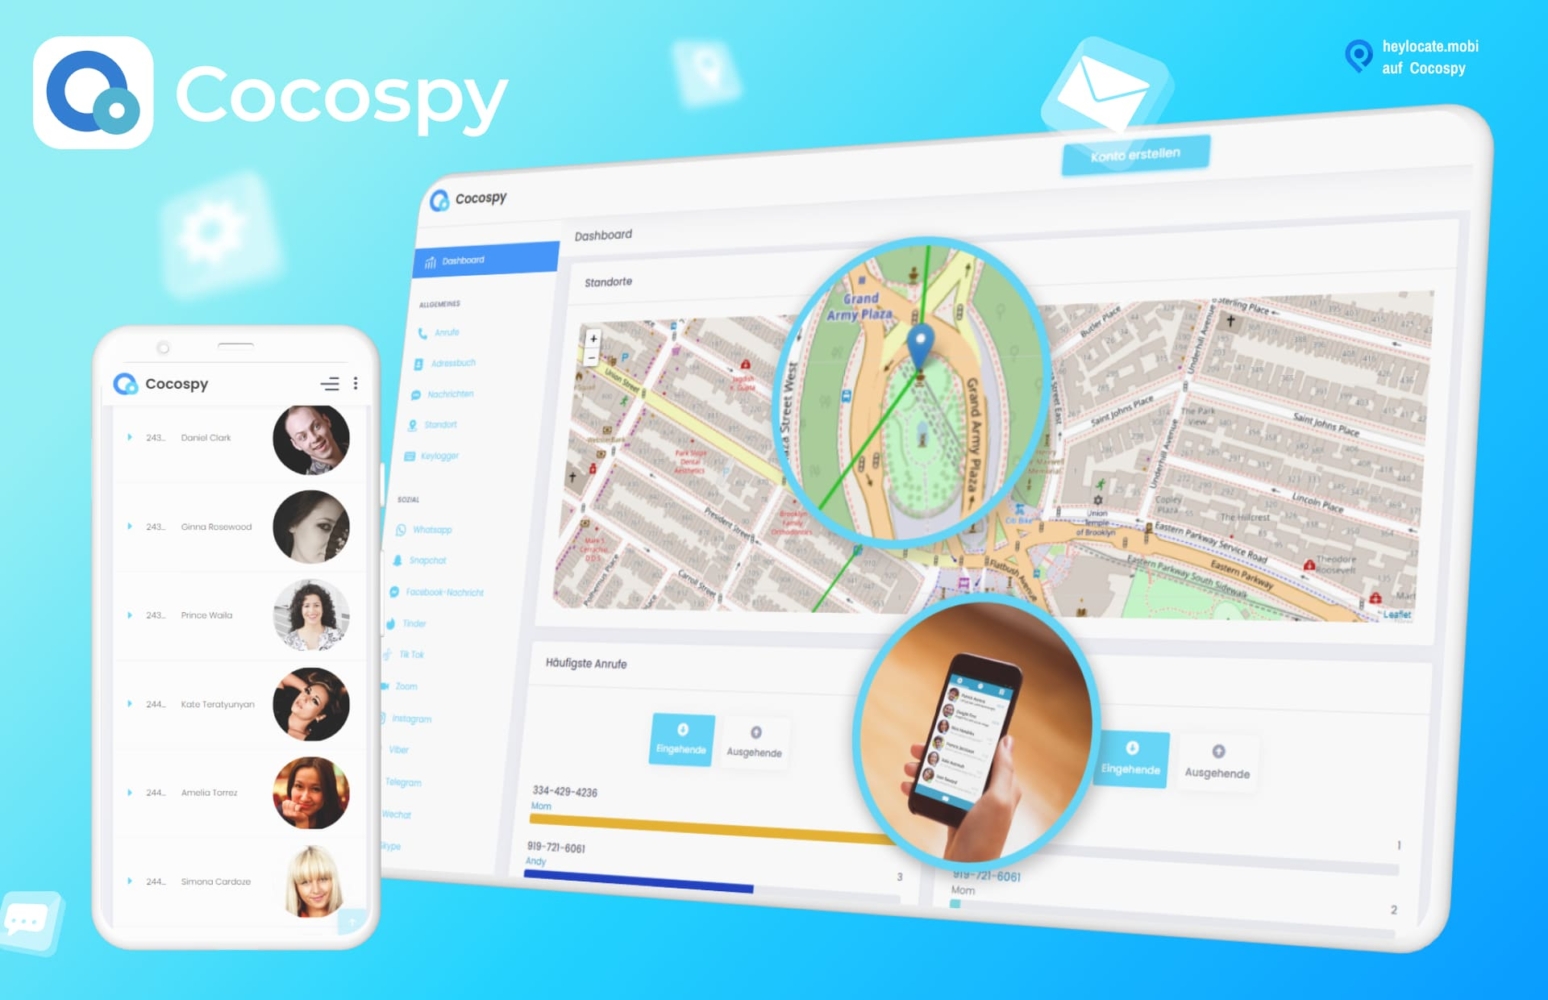 Bild für Cocospy, das ein Smartphone und einen Browser mit der Anwendungsschnittstelle zeigt, auf der eine Karte mit Standortpins, eine Liste von Kontakten und eine Person mit einem Smartphone zu sehen sind, die die Anwendung demonstriert